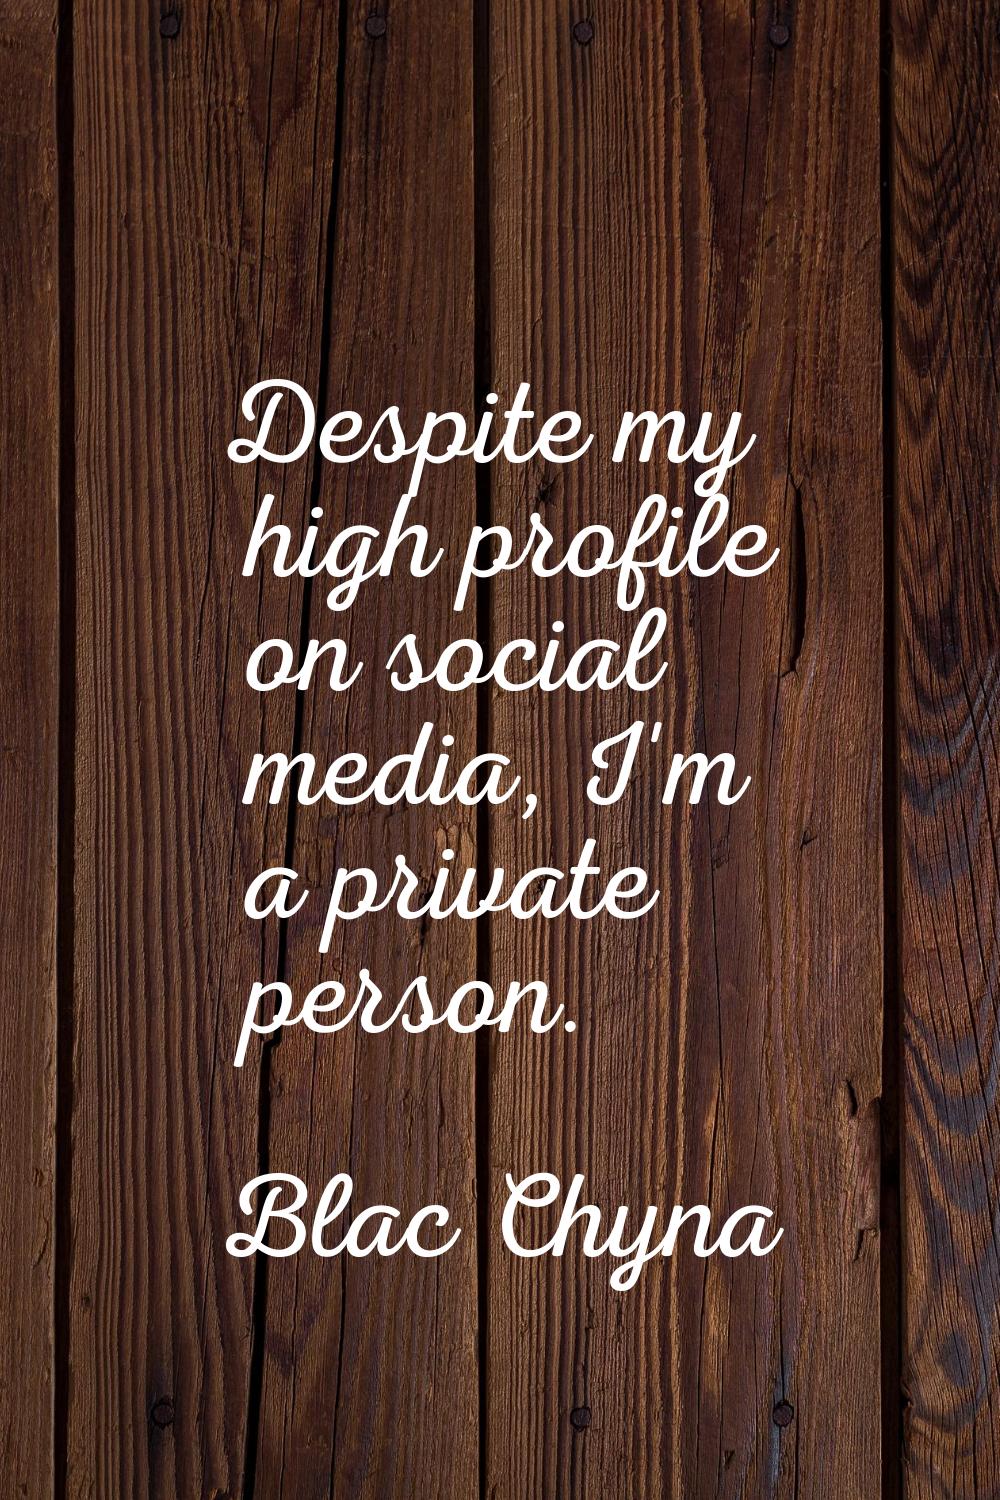 Despite my high profile on social media, I'm a private person.